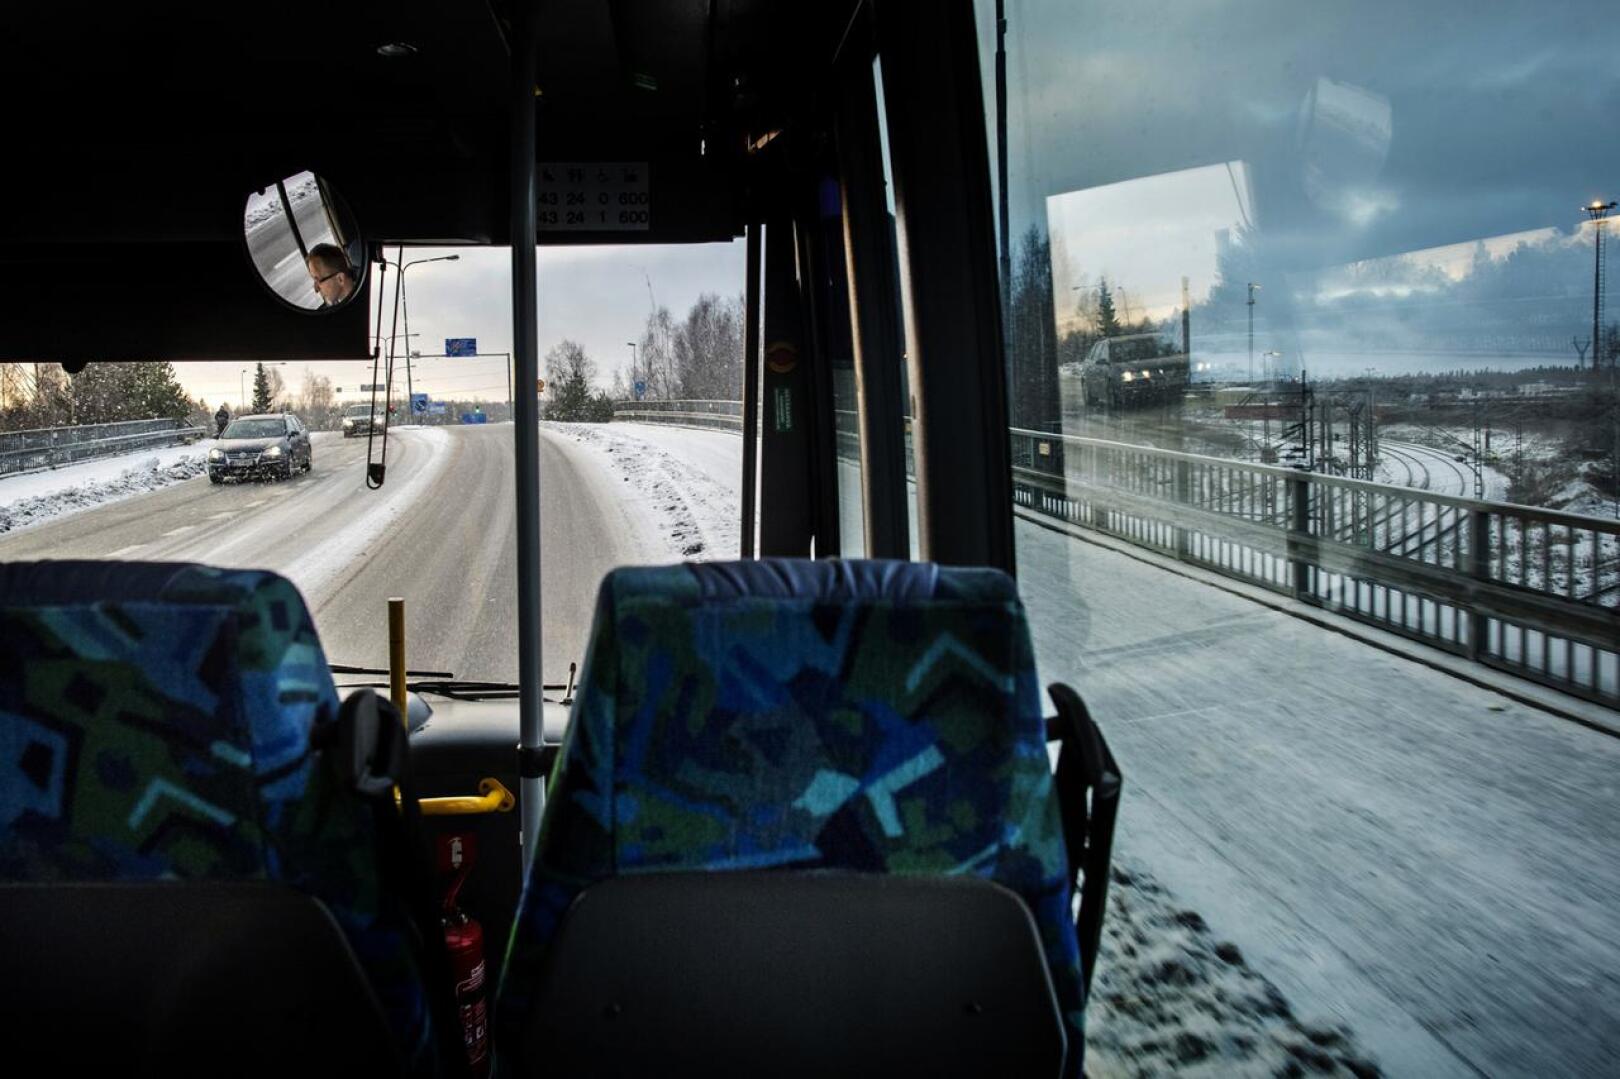 Linja-autoalan lakko alkaa mahdollisesti keskiviikkona. Paikallisesti se vaikuttaa Onnibussin liikennöintiin.